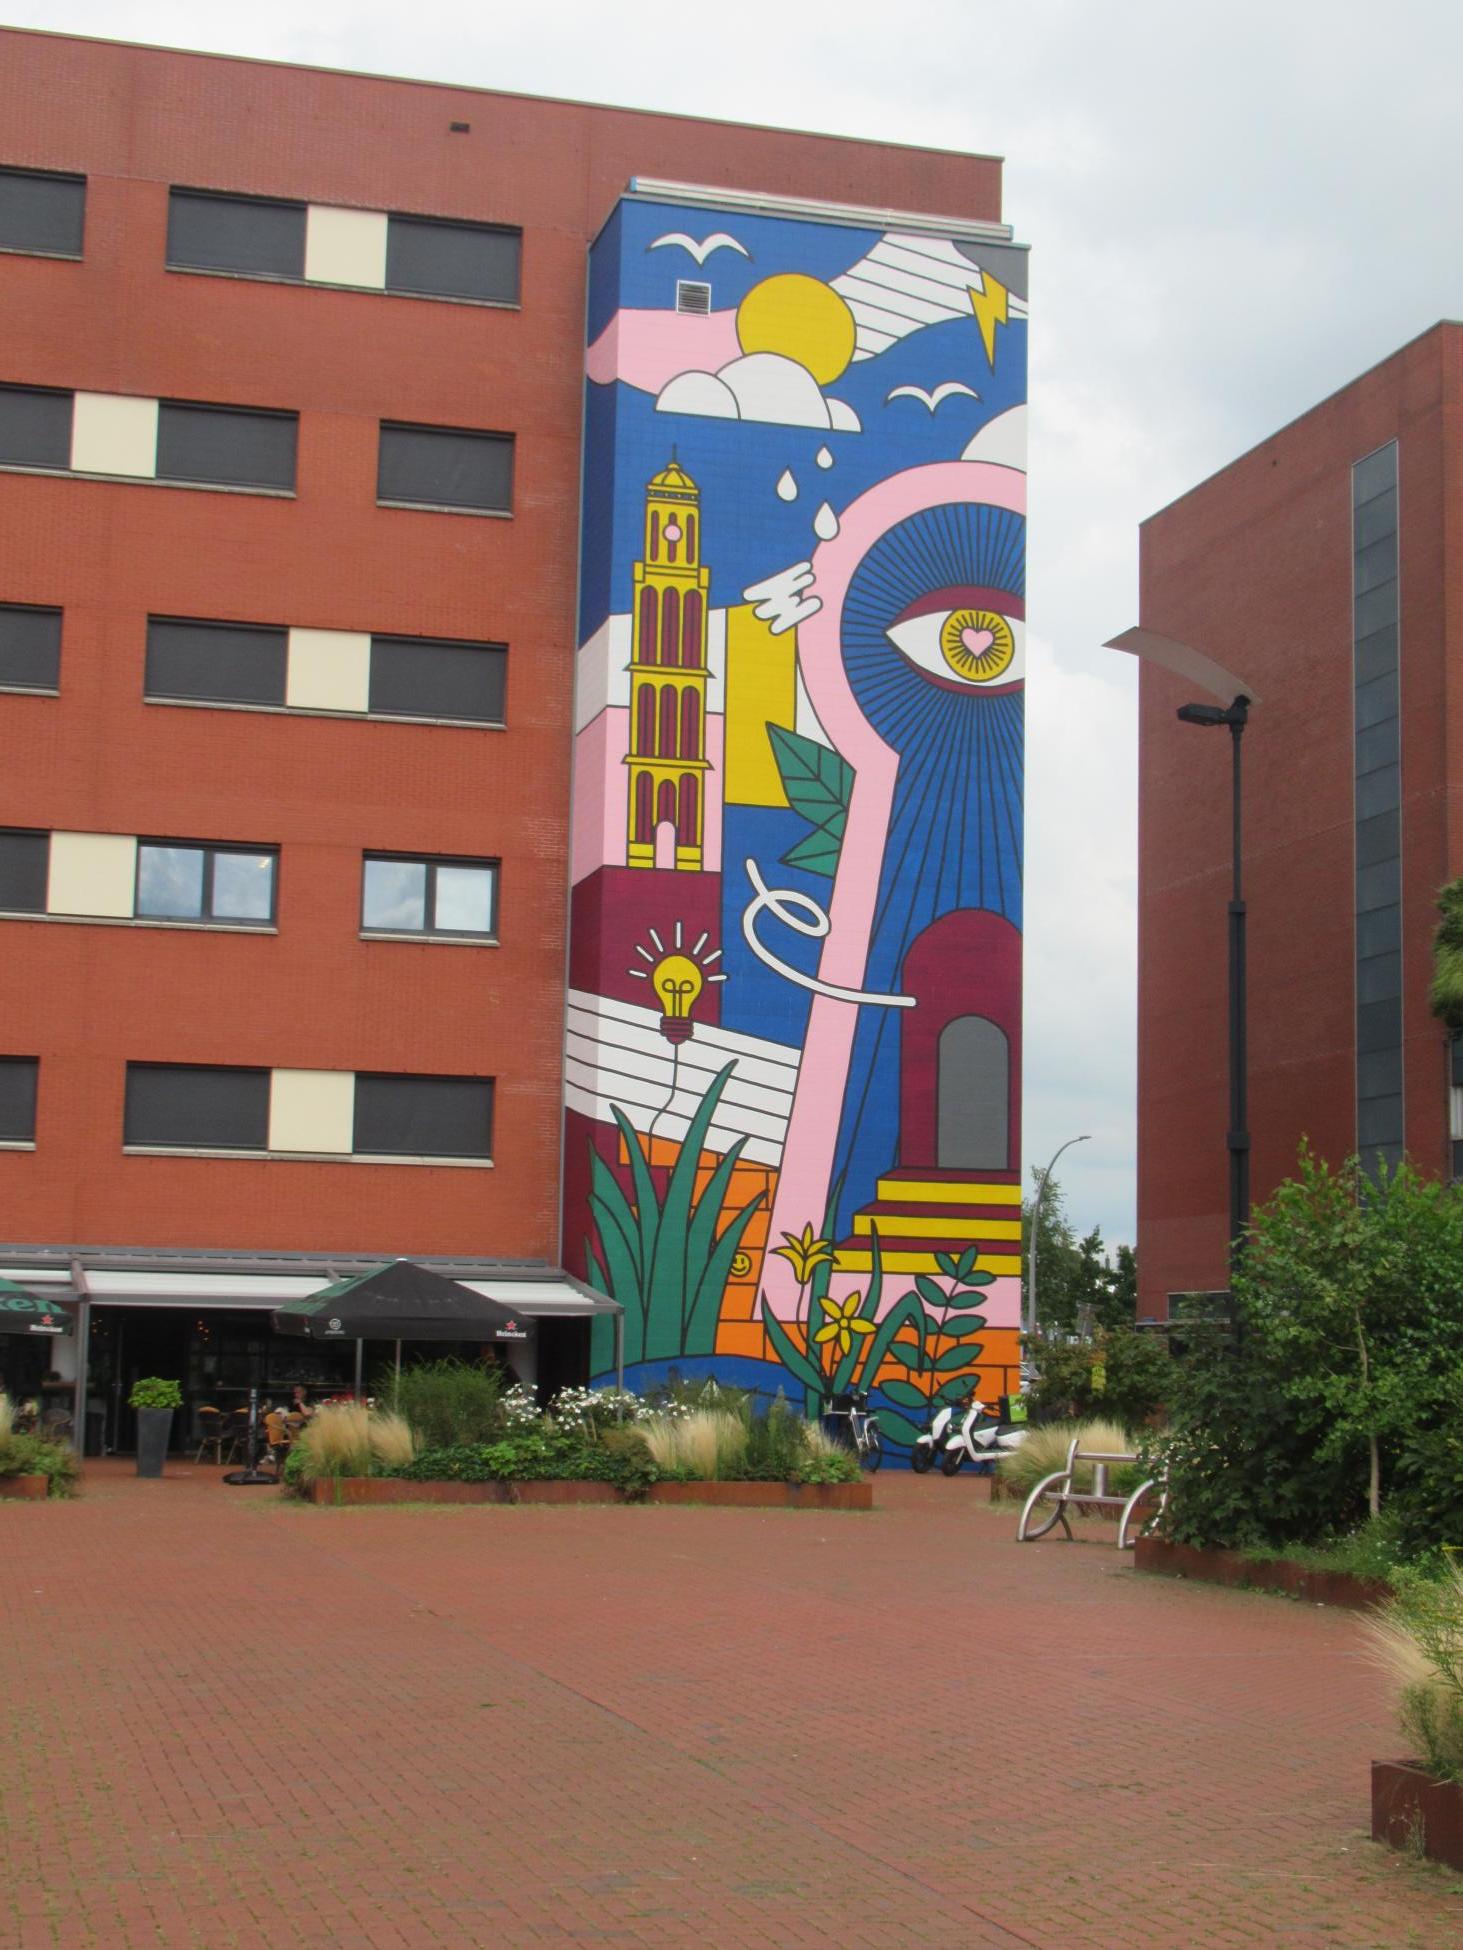 Muurschildering bij modern gebouw in de buurt van het station van Zwolle 